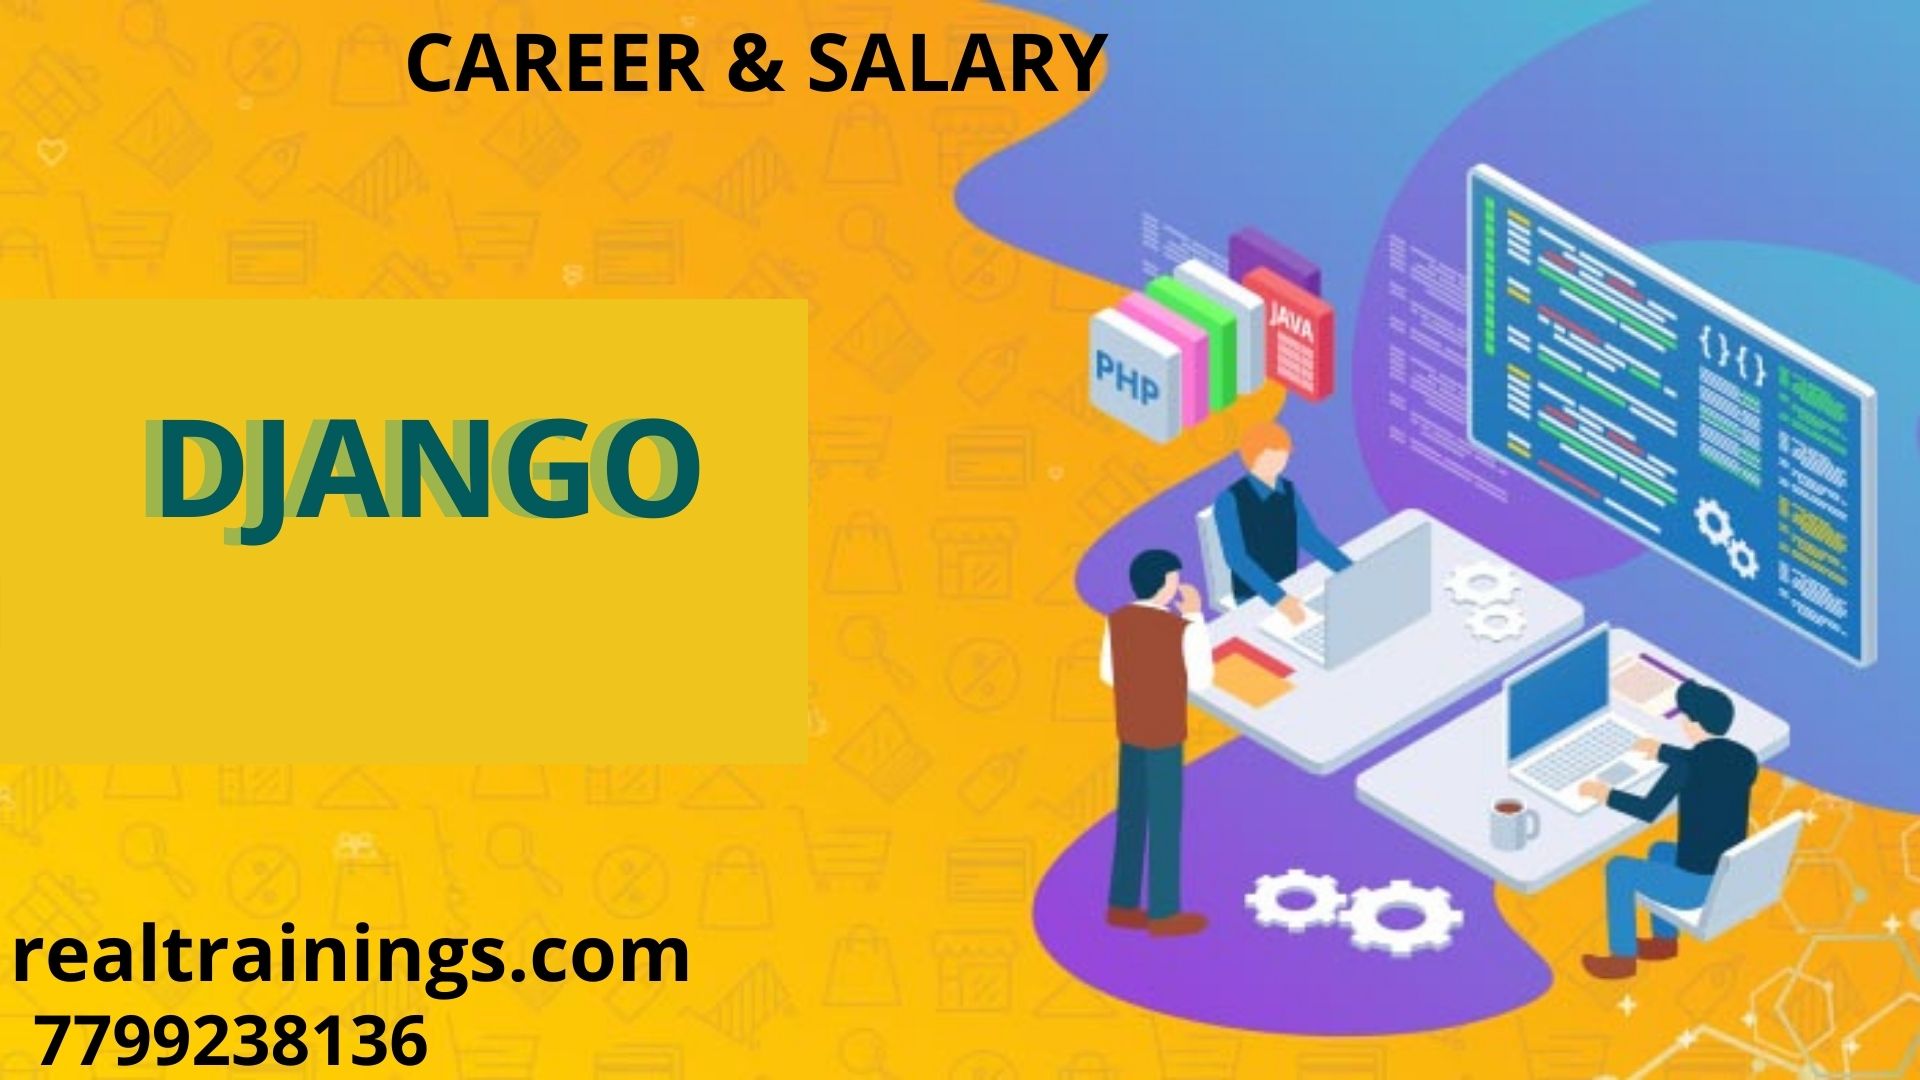 DJANGO Career & Salary